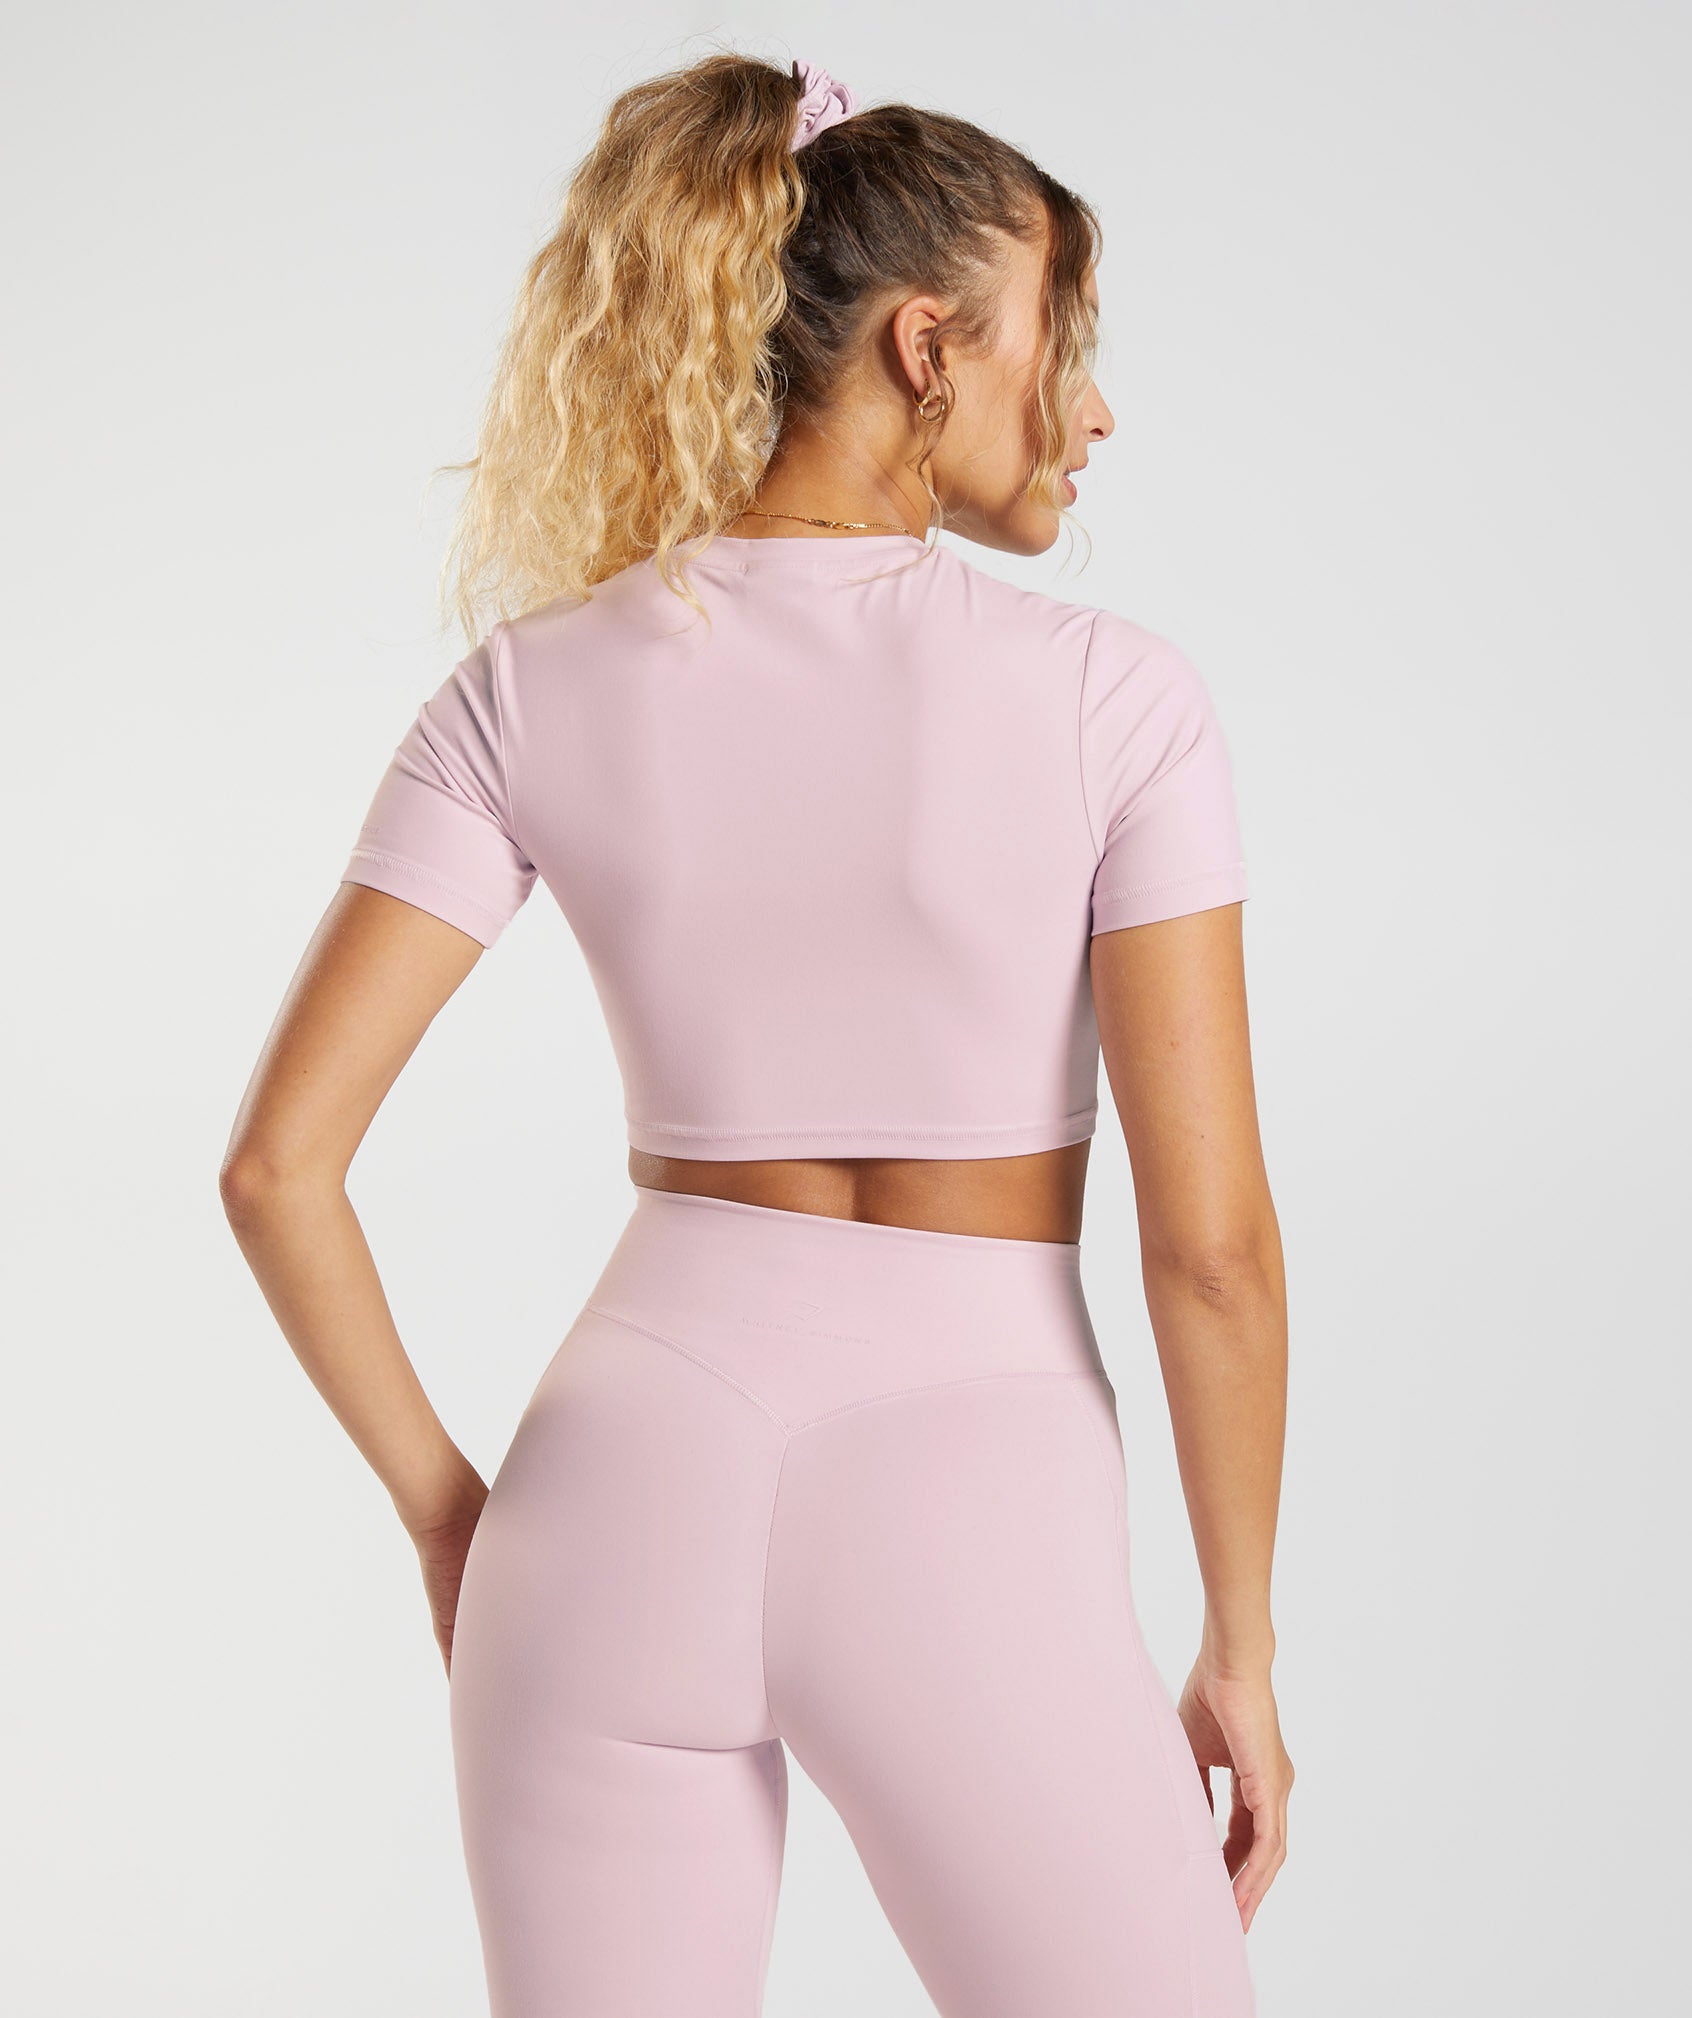 Whitney Short Sleeve Crop Top in Pressed Petal Pink